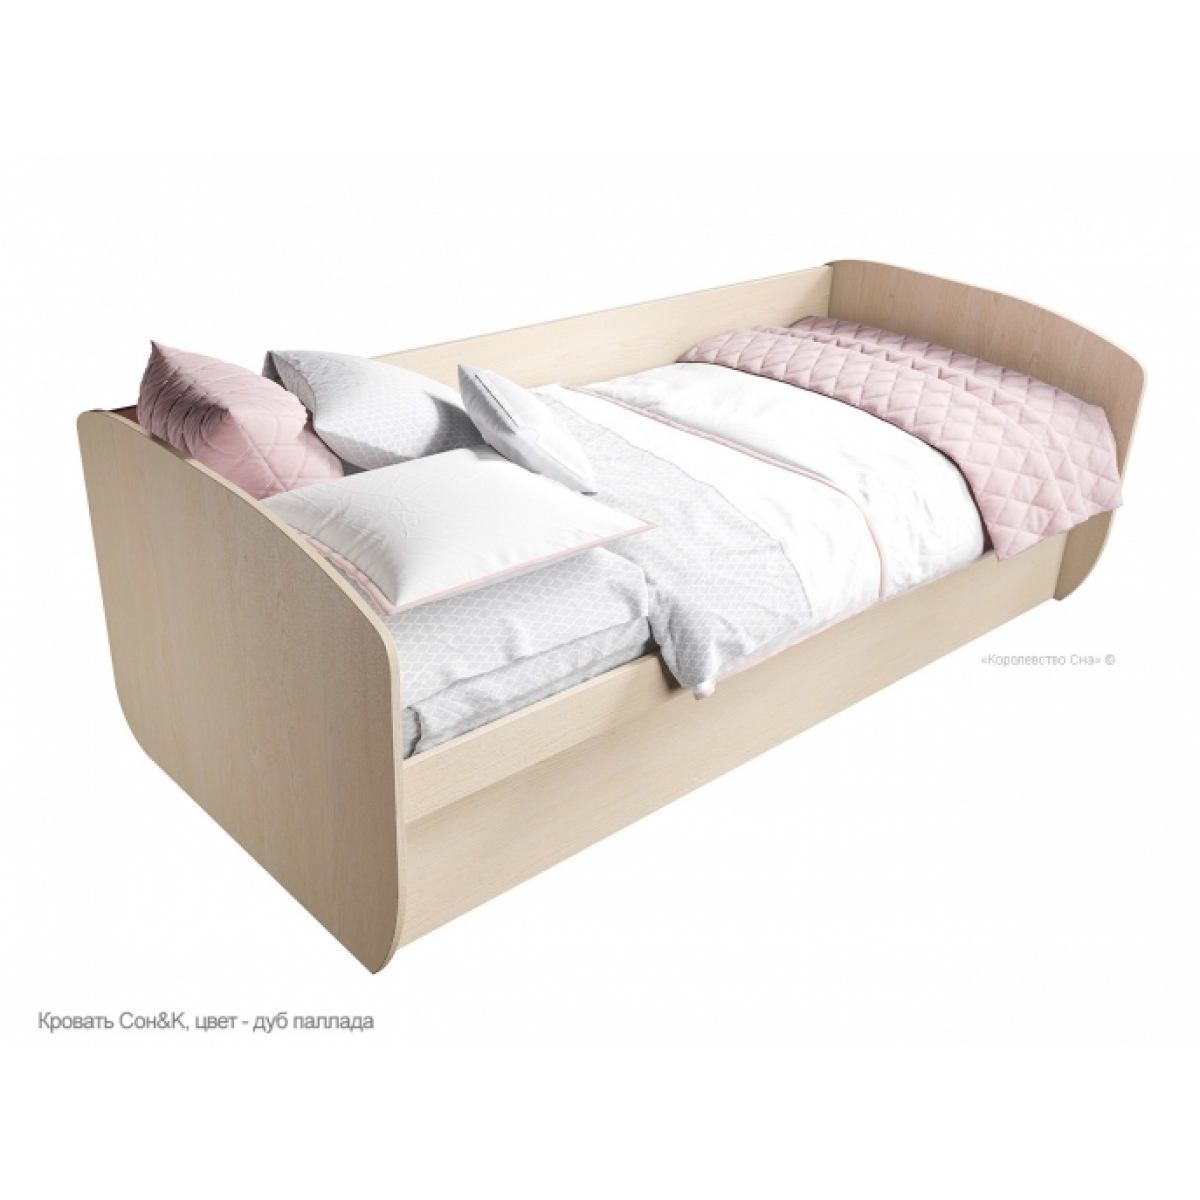 Кровать подростковая с подъемным механизмом Сон&K, цвет дуб паллада